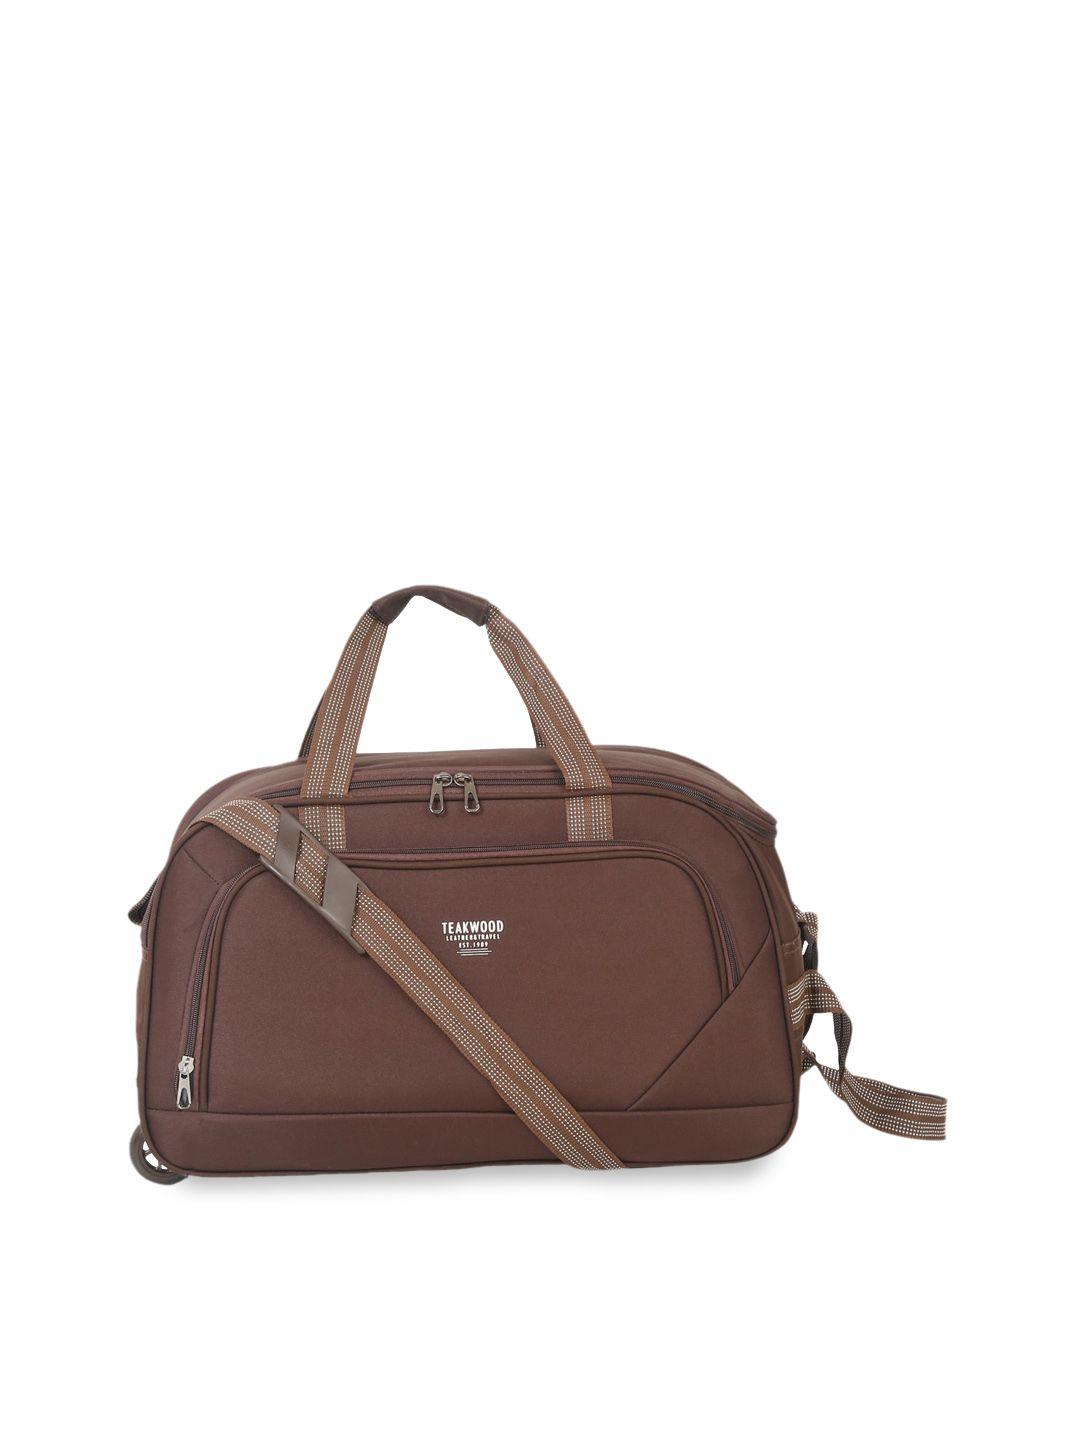 teakwood leathers medium duffel bag